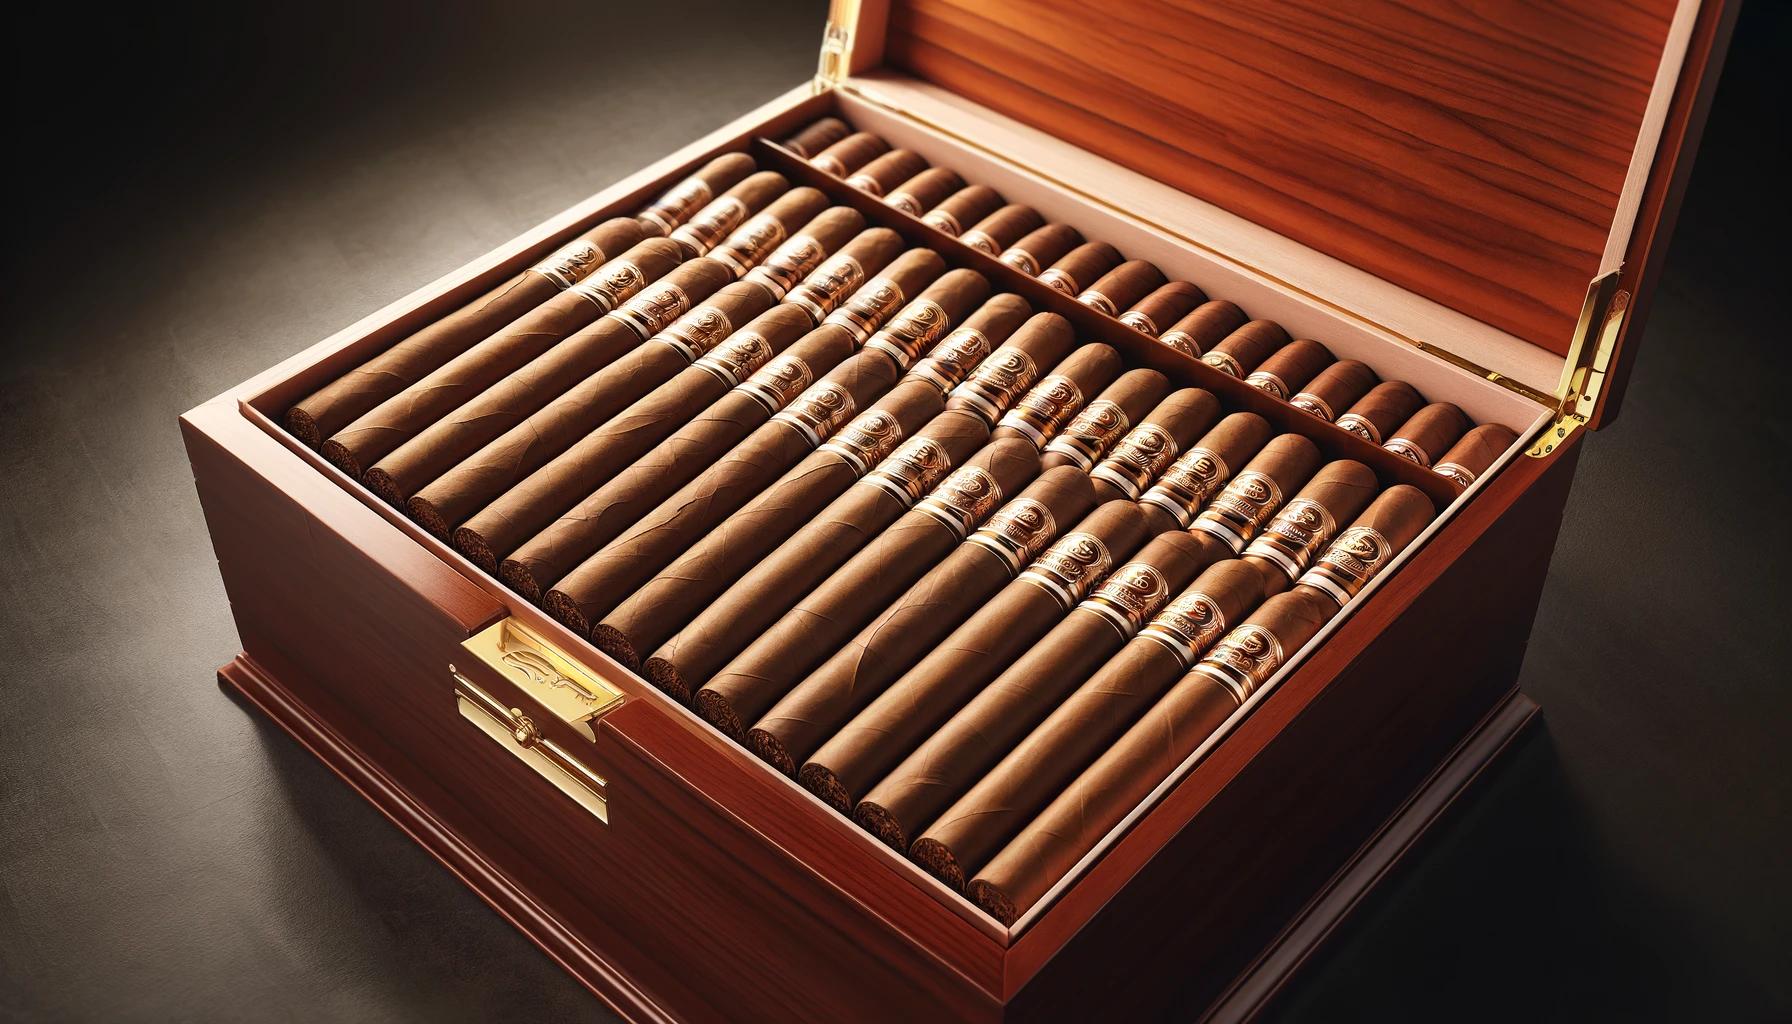 A box of Hoyo de Monterrey Cigars